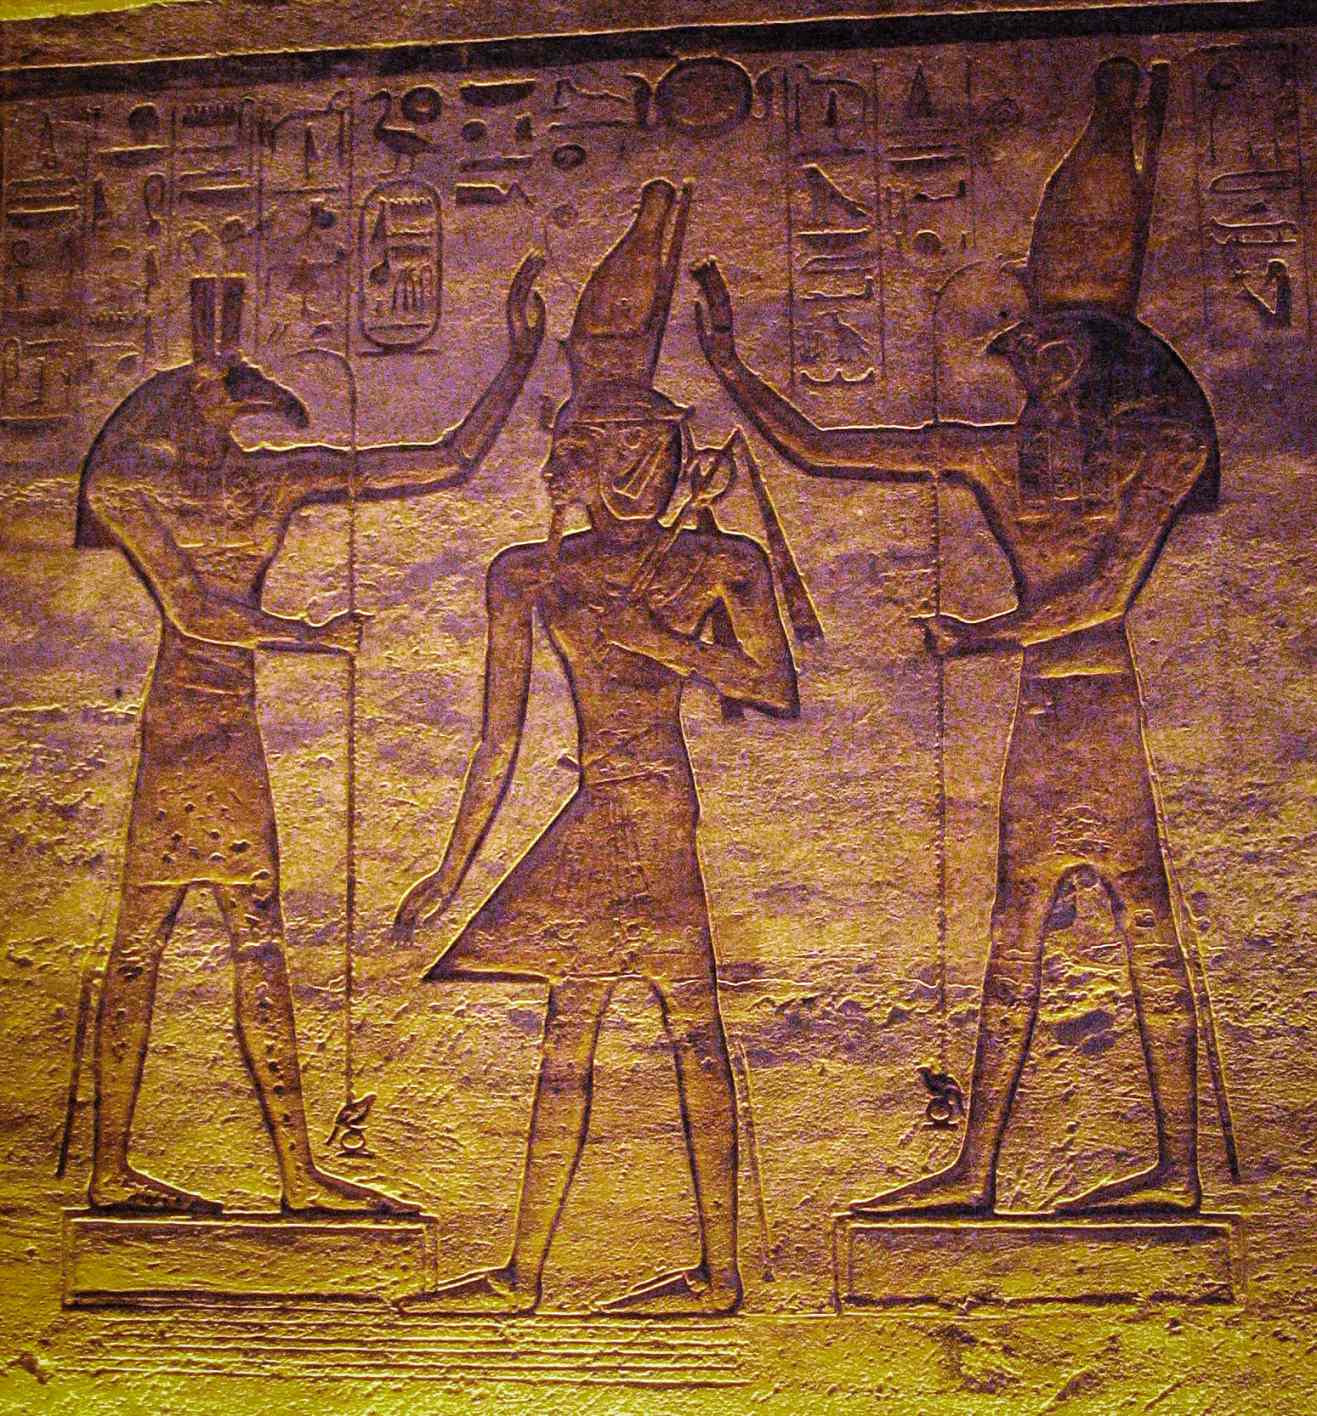 赛特（赛斯）和荷鲁斯崇拜拉美西斯。 目前的研究表明，在开罗历中，月亮可能由赛斯代表，而变星阿尔戈尔则由荷鲁斯代表。